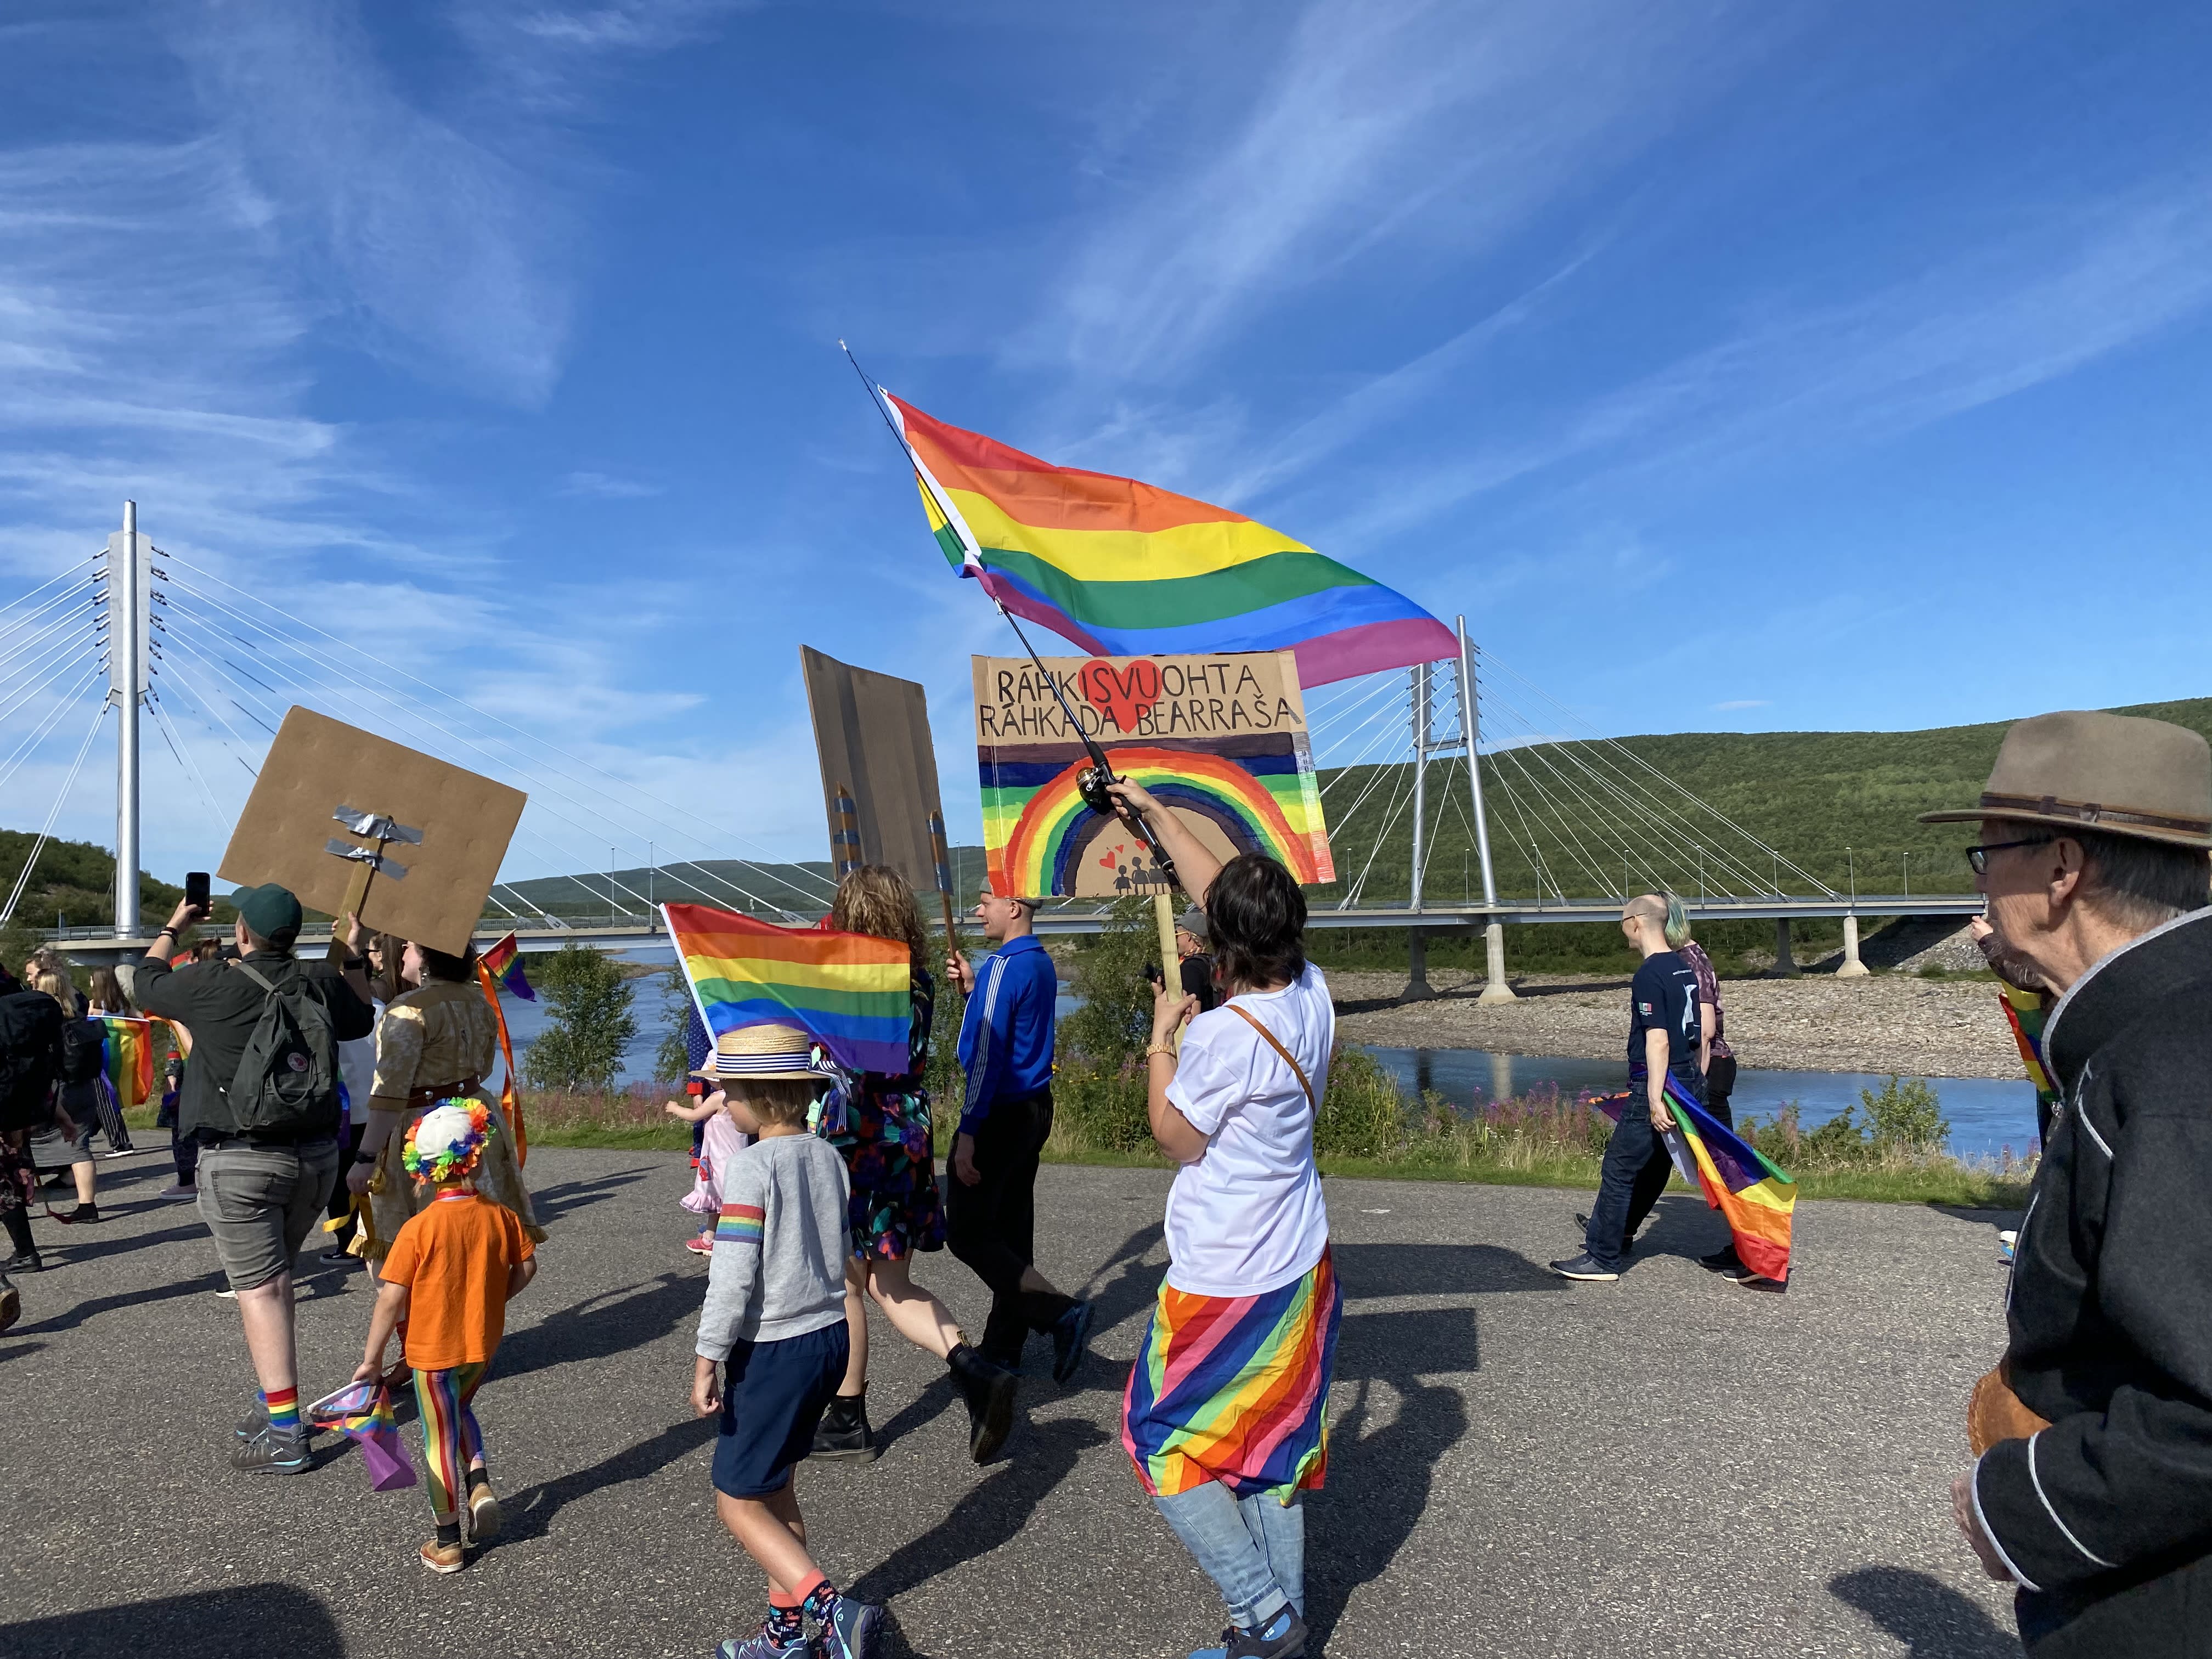 Die meisten Organisatoren der Pride-Veranstaltung in Finnland berichten von Belästigung und Gewalt